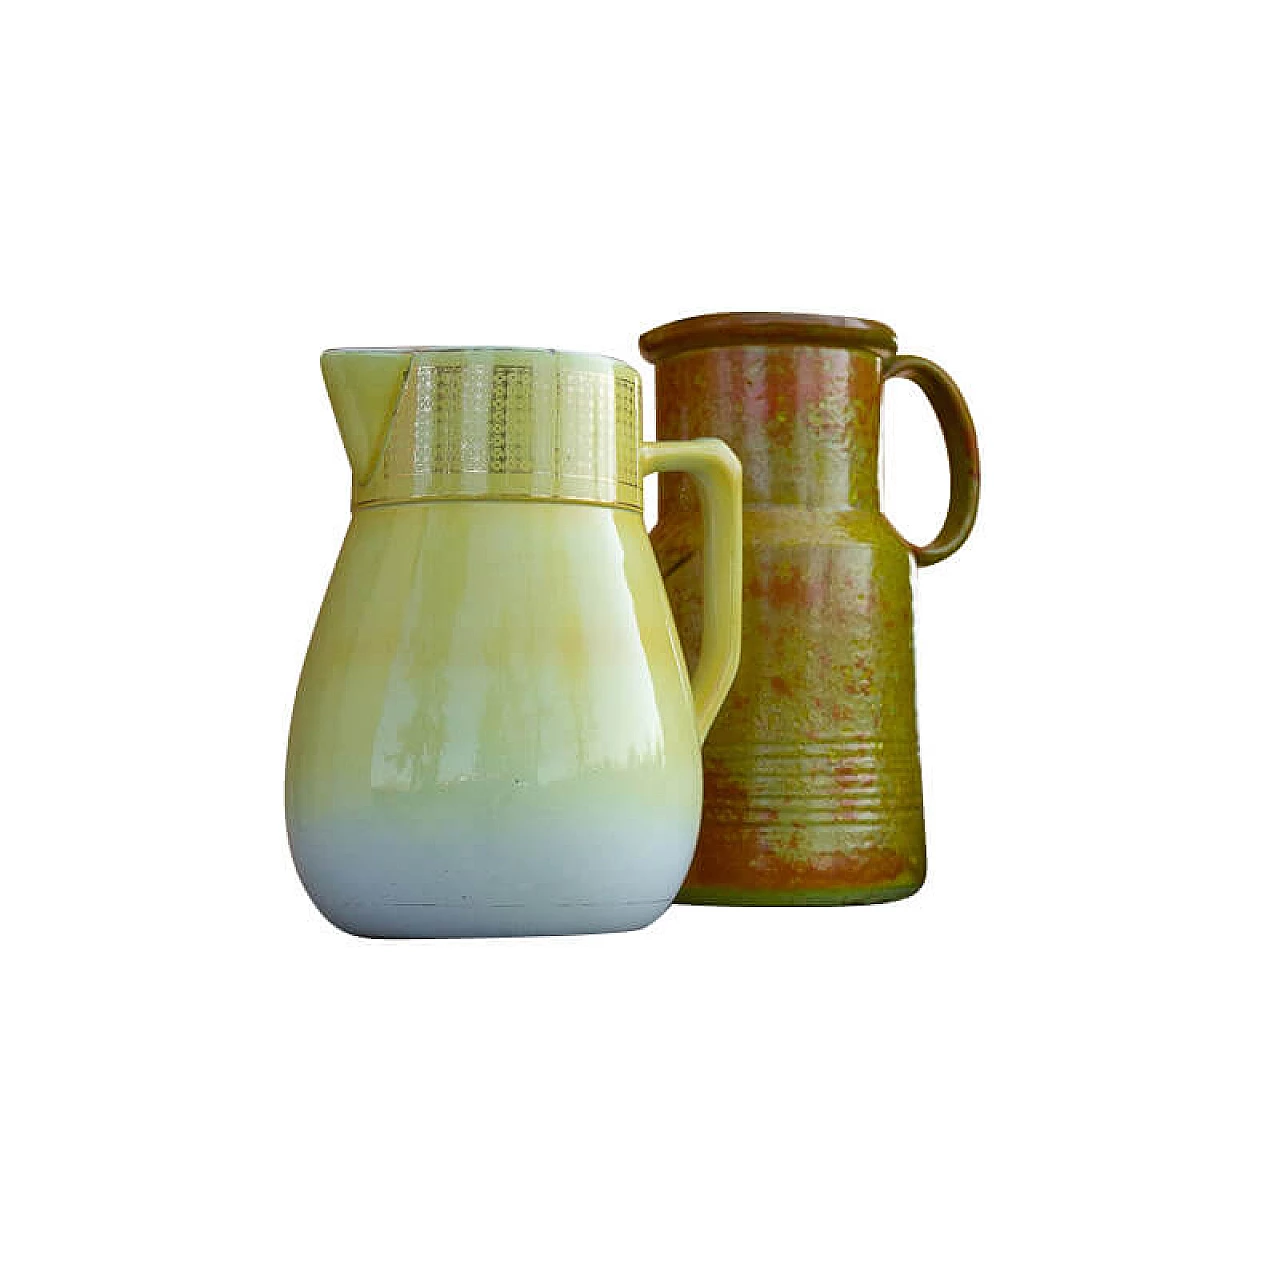 Richard Ginori's ceramic jug, 1930s 1283756